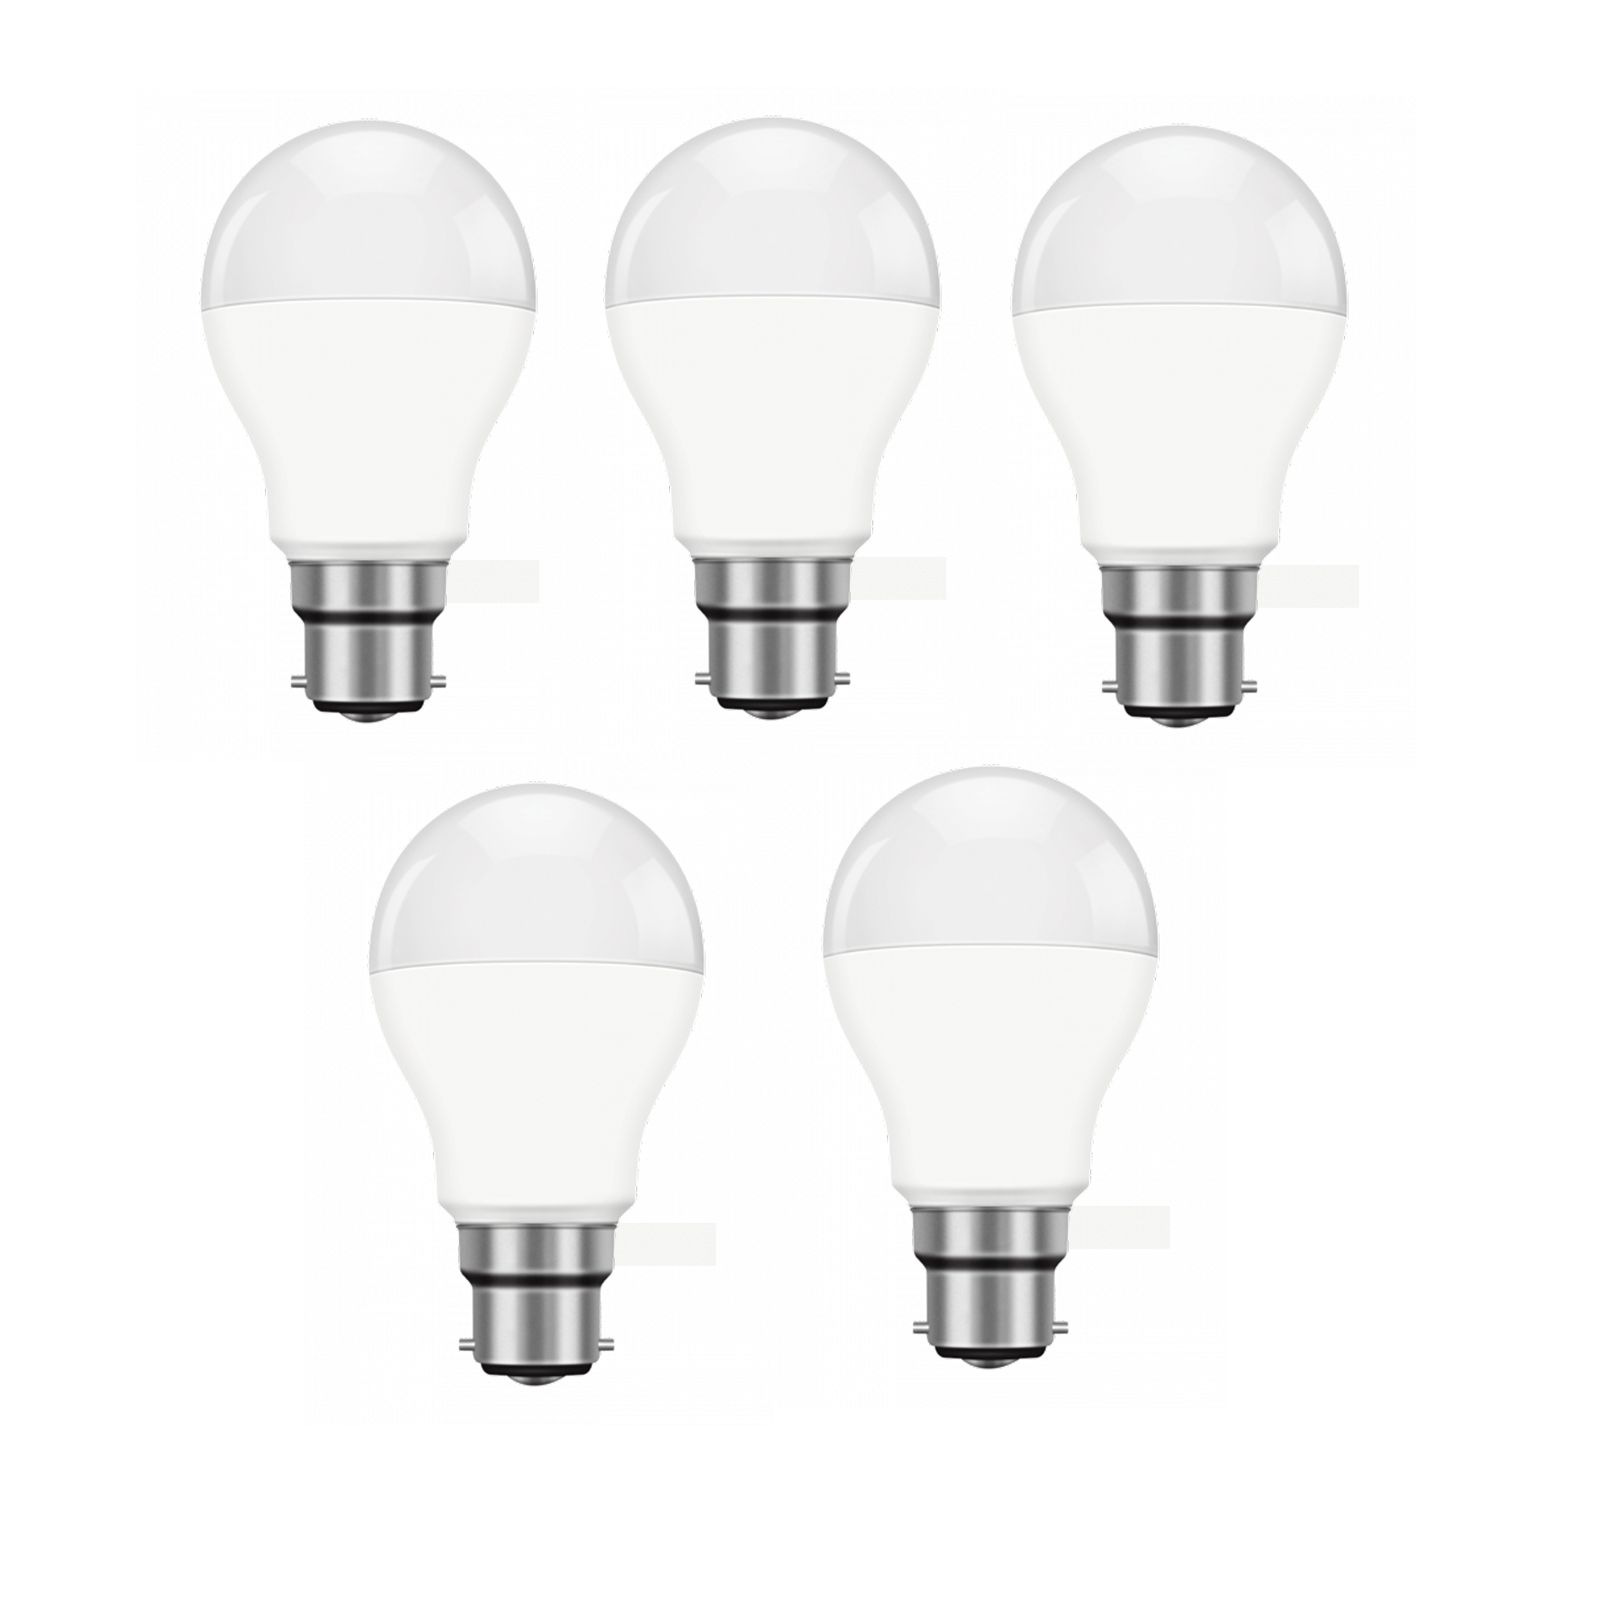     			Lenon - 9W Cool Day Light LED Bulb ( Pack of 5 )